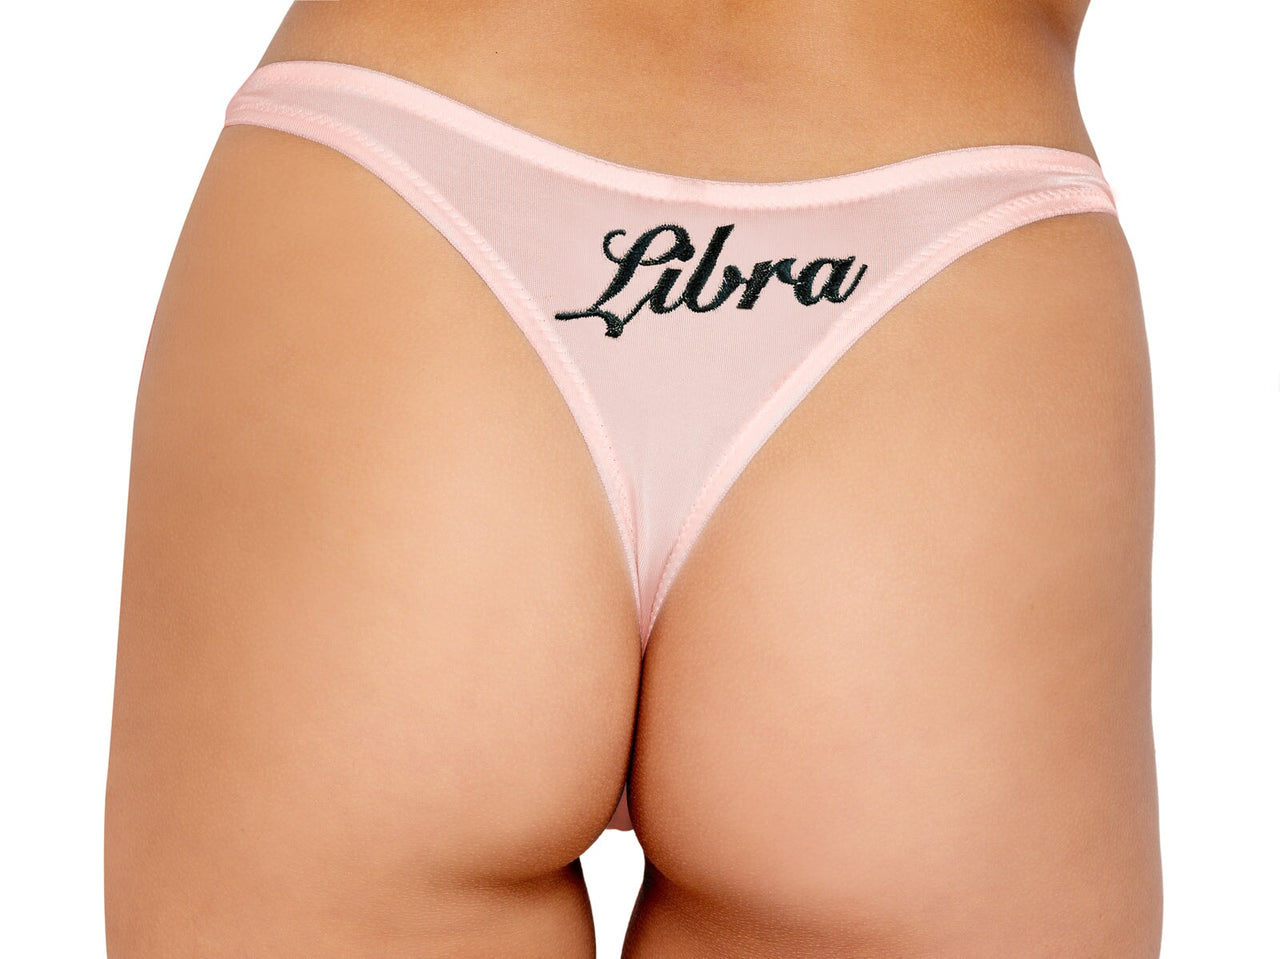 Zodiac Libra Panty